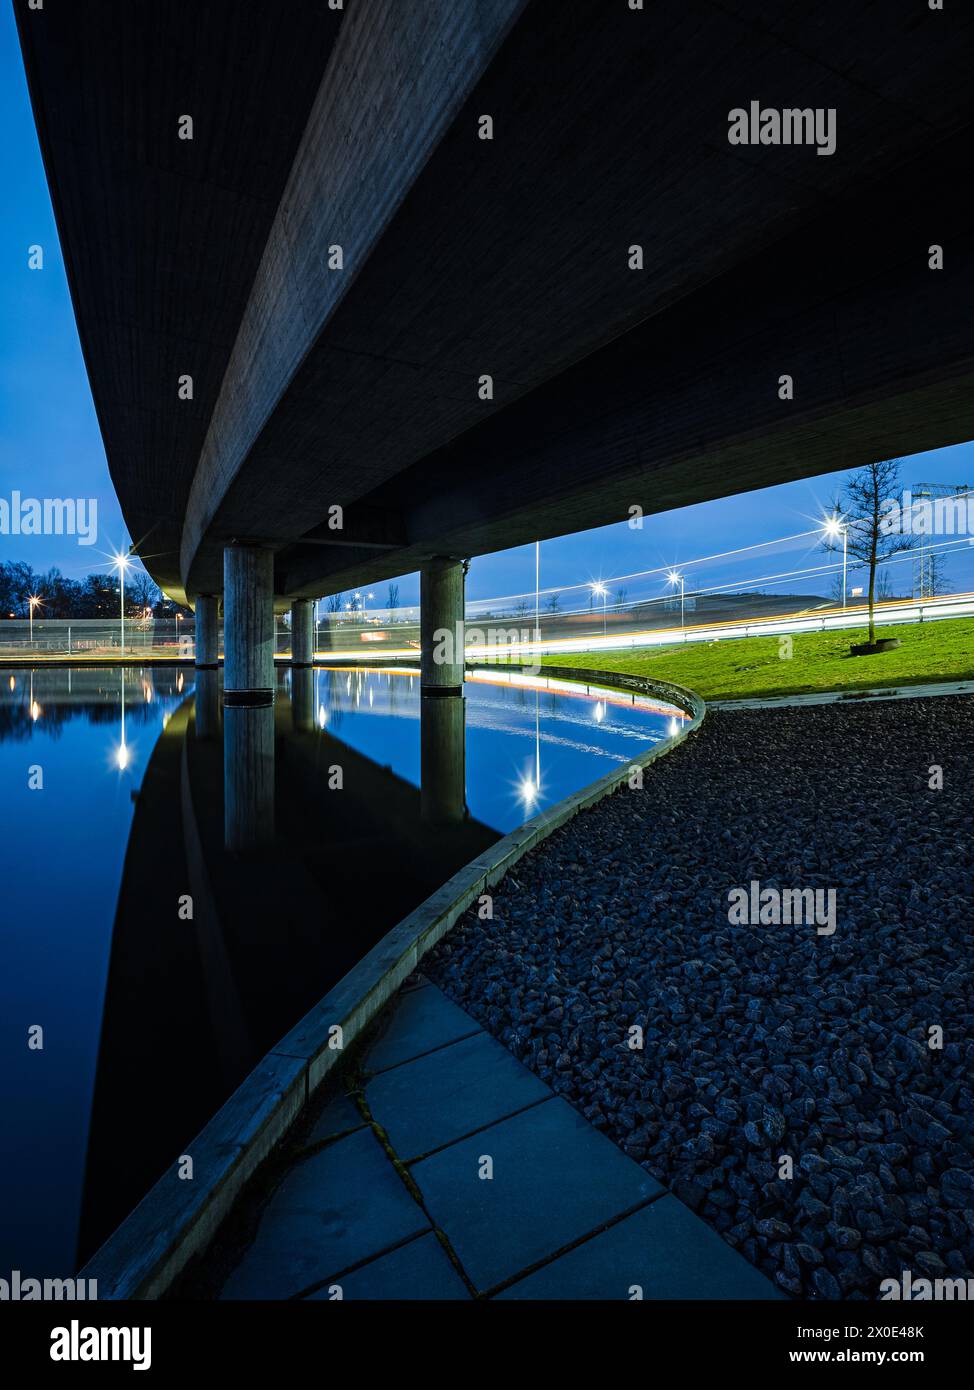 Una scena tranquilla si dispiega mentre il crepuscolo cade su Goteborg, Svezia, guardando da sotto un ponte mentre si estende sull'acqua ferma. L'architettura dei ponti c Foto Stock